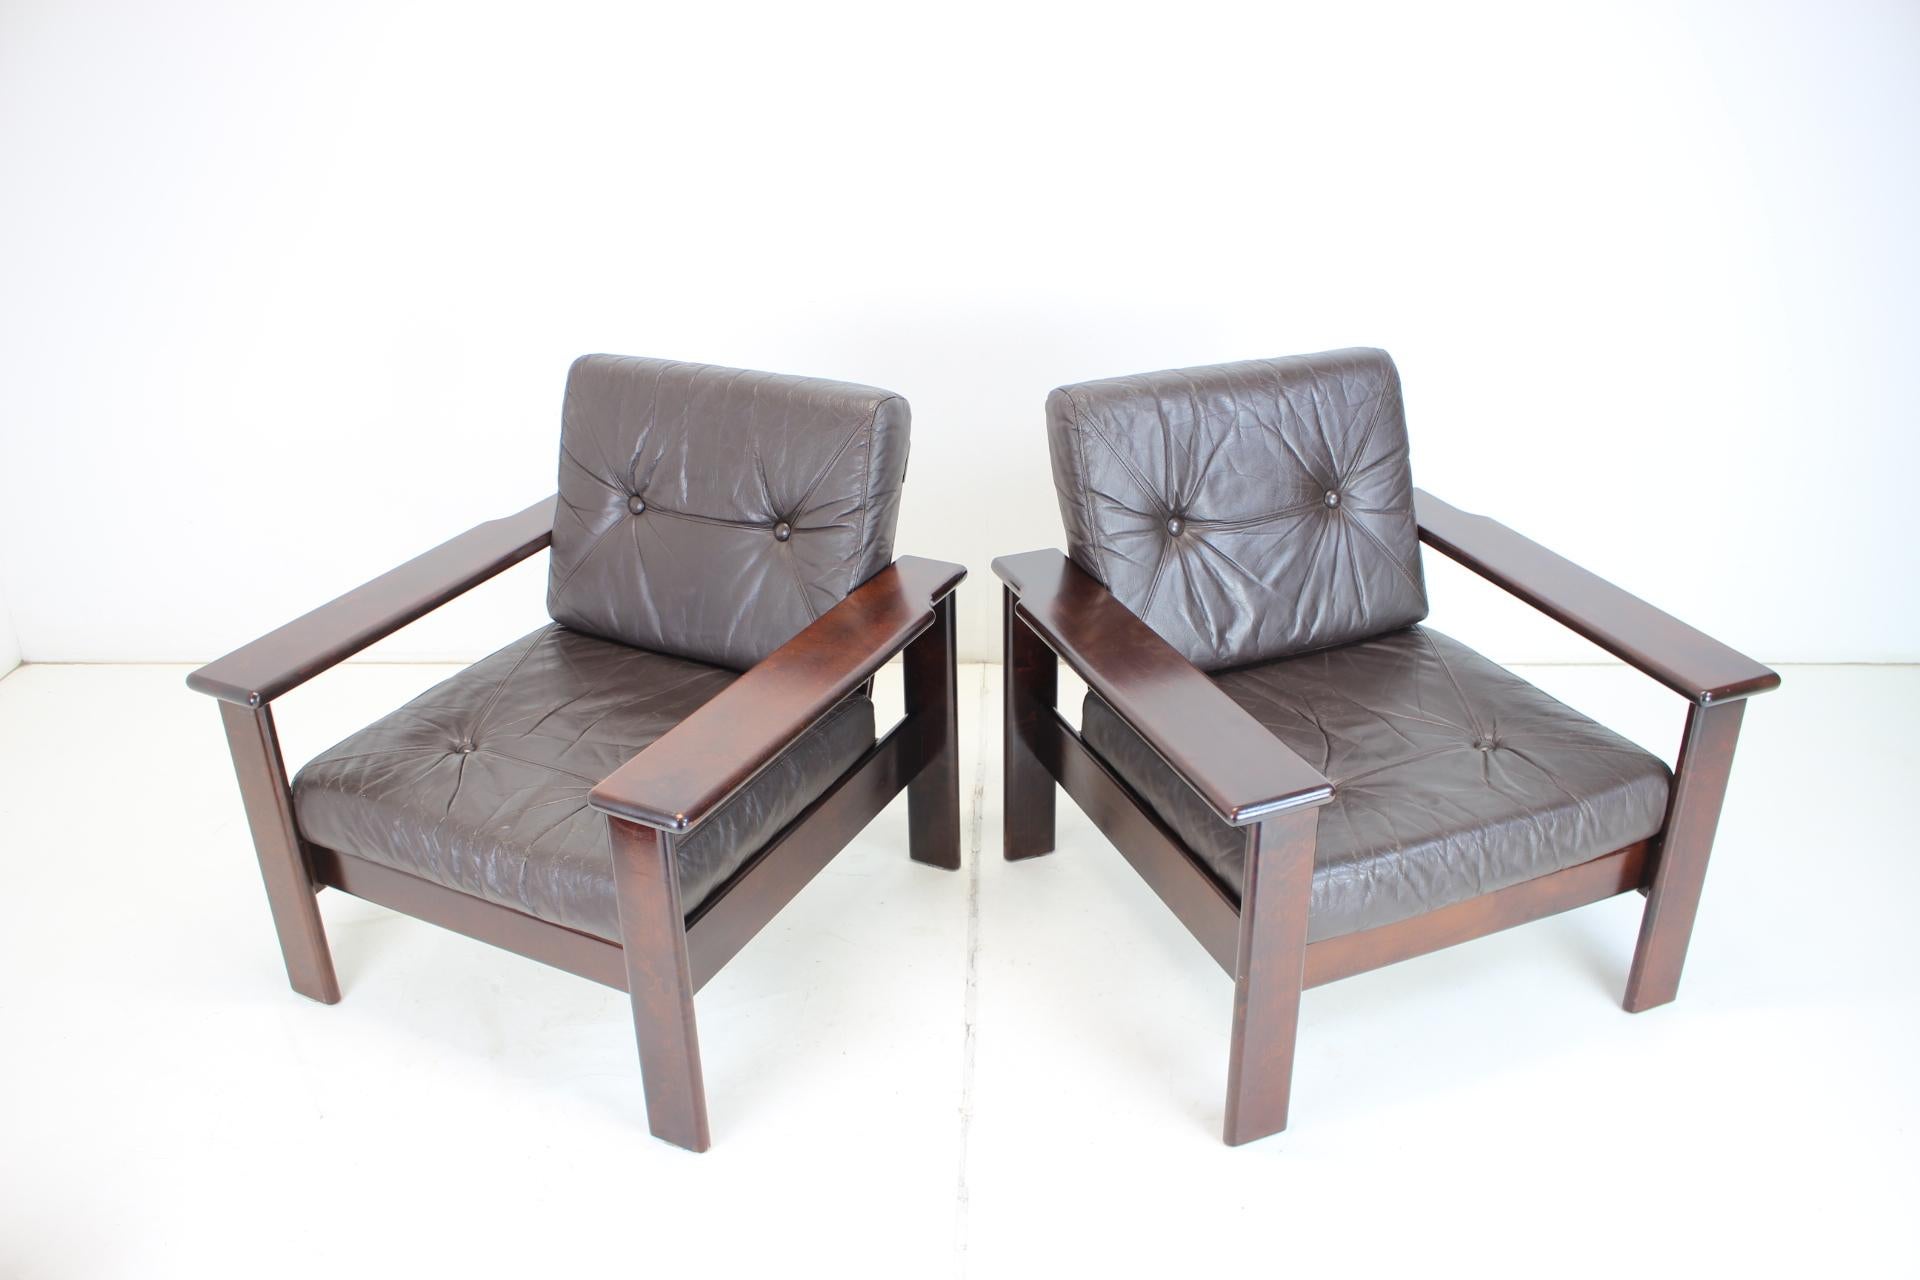 
- Hergestellt aus Holz, Leder
- Guter Zustand.
- Zum Umtausch geeigneter Stoff
- Sessel weisen Gebrauchsspuren auf